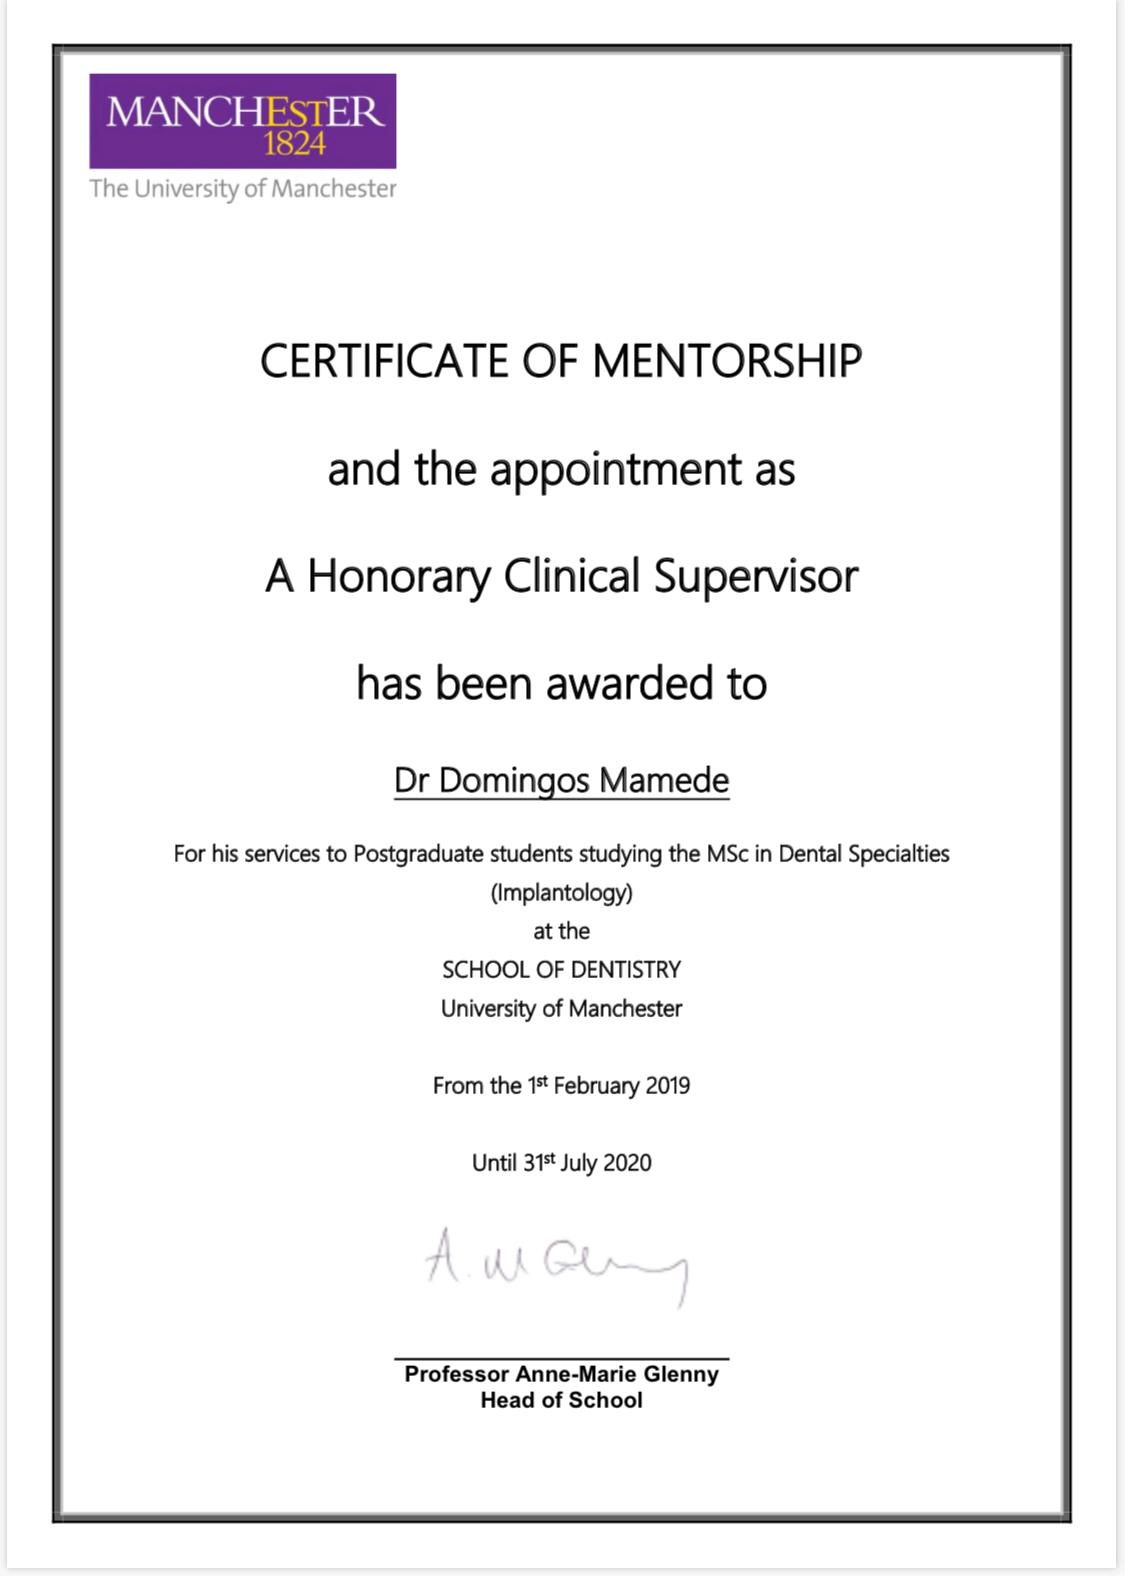 Certificate of Mentorship